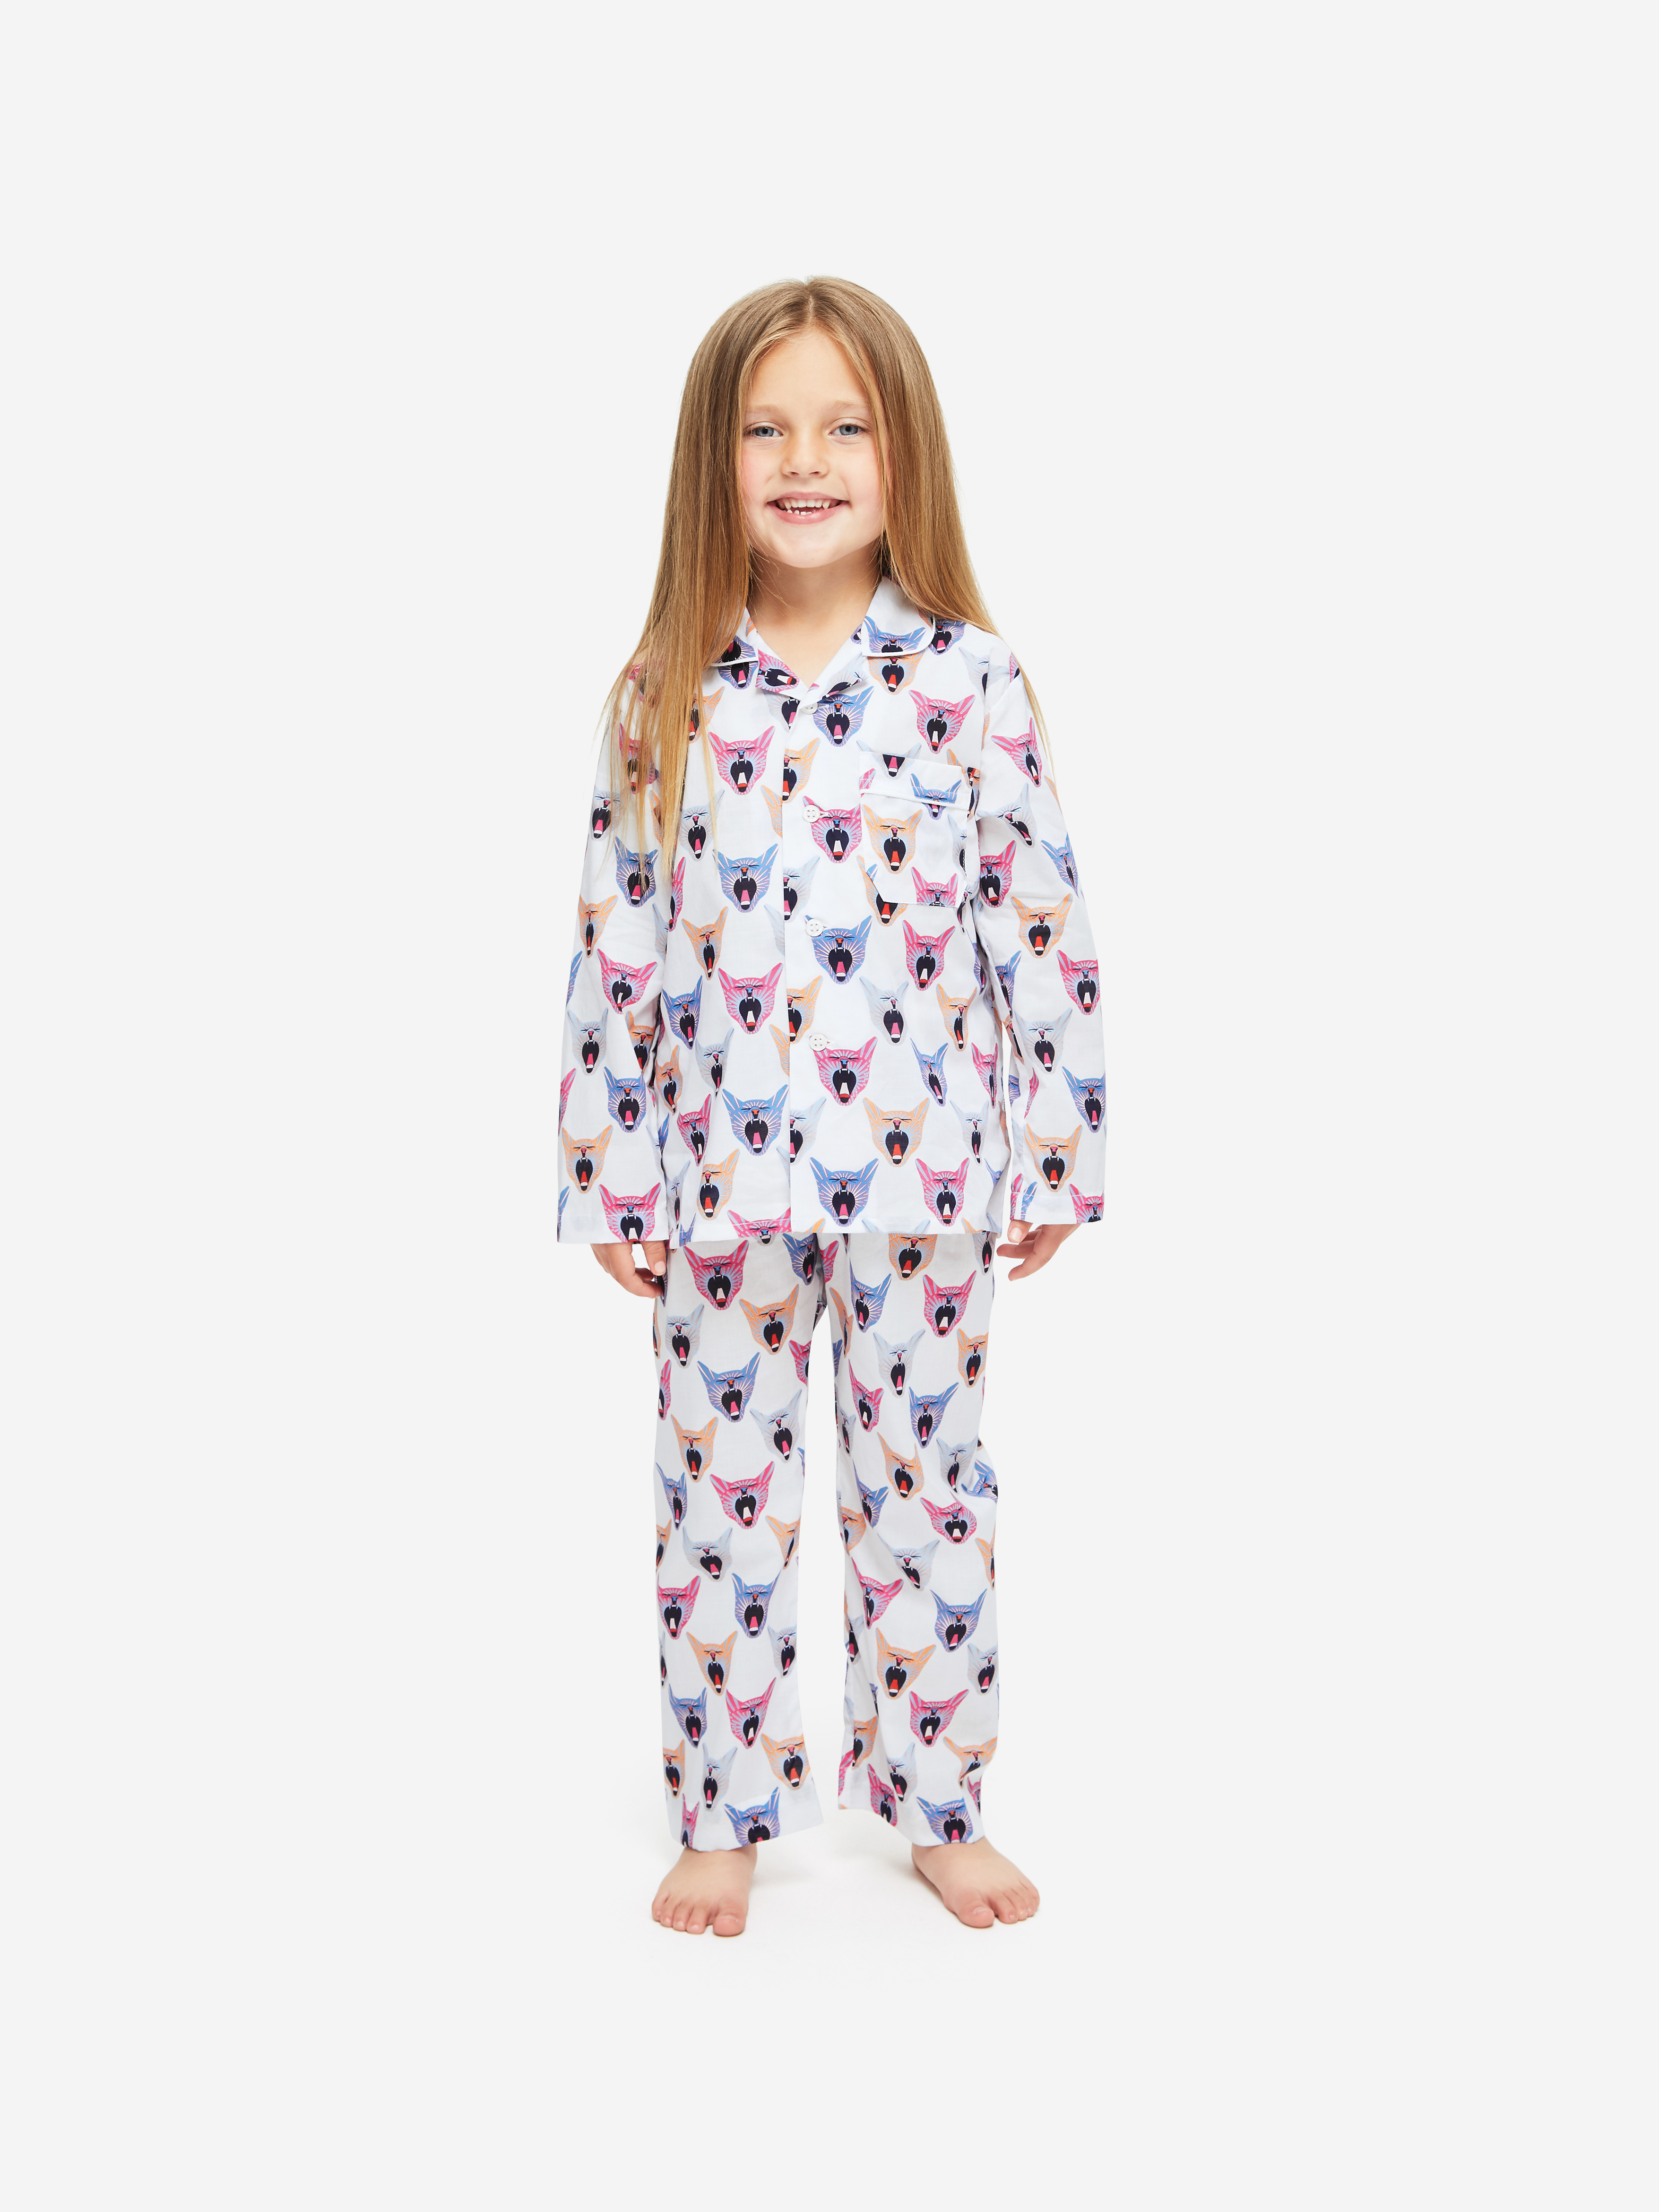 Ledbury 46 Cotton Batiste Multi Kids' Pyjamas